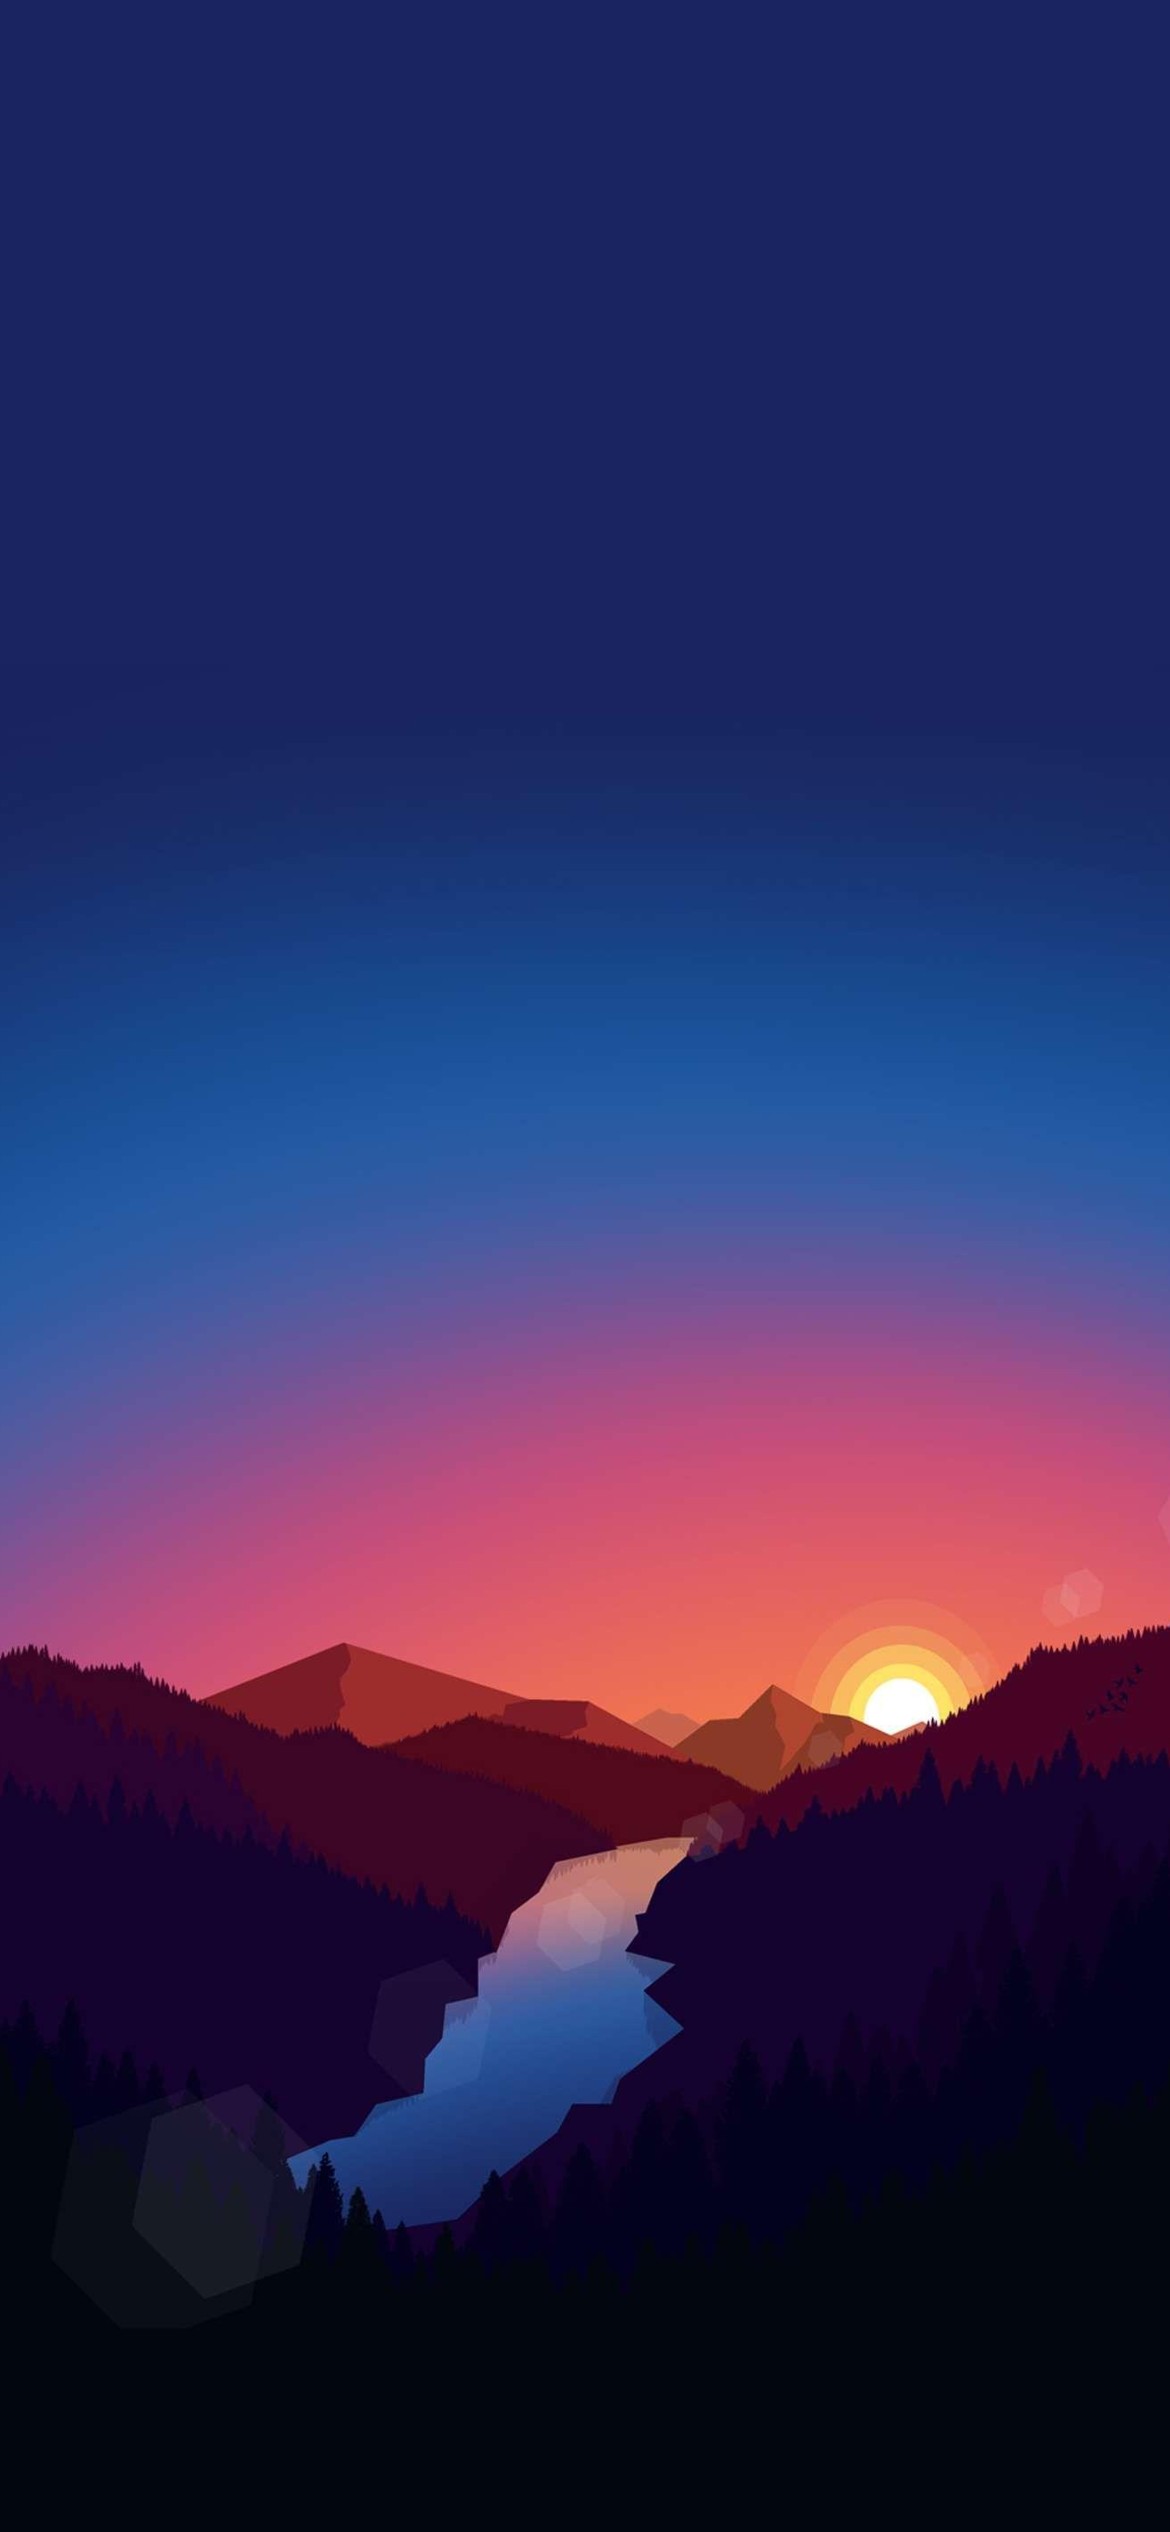 綺麗な夜空と夕日と茶色い山と森と川 Iphone 12 Pro スマホ壁紙 待ち受け スマラン